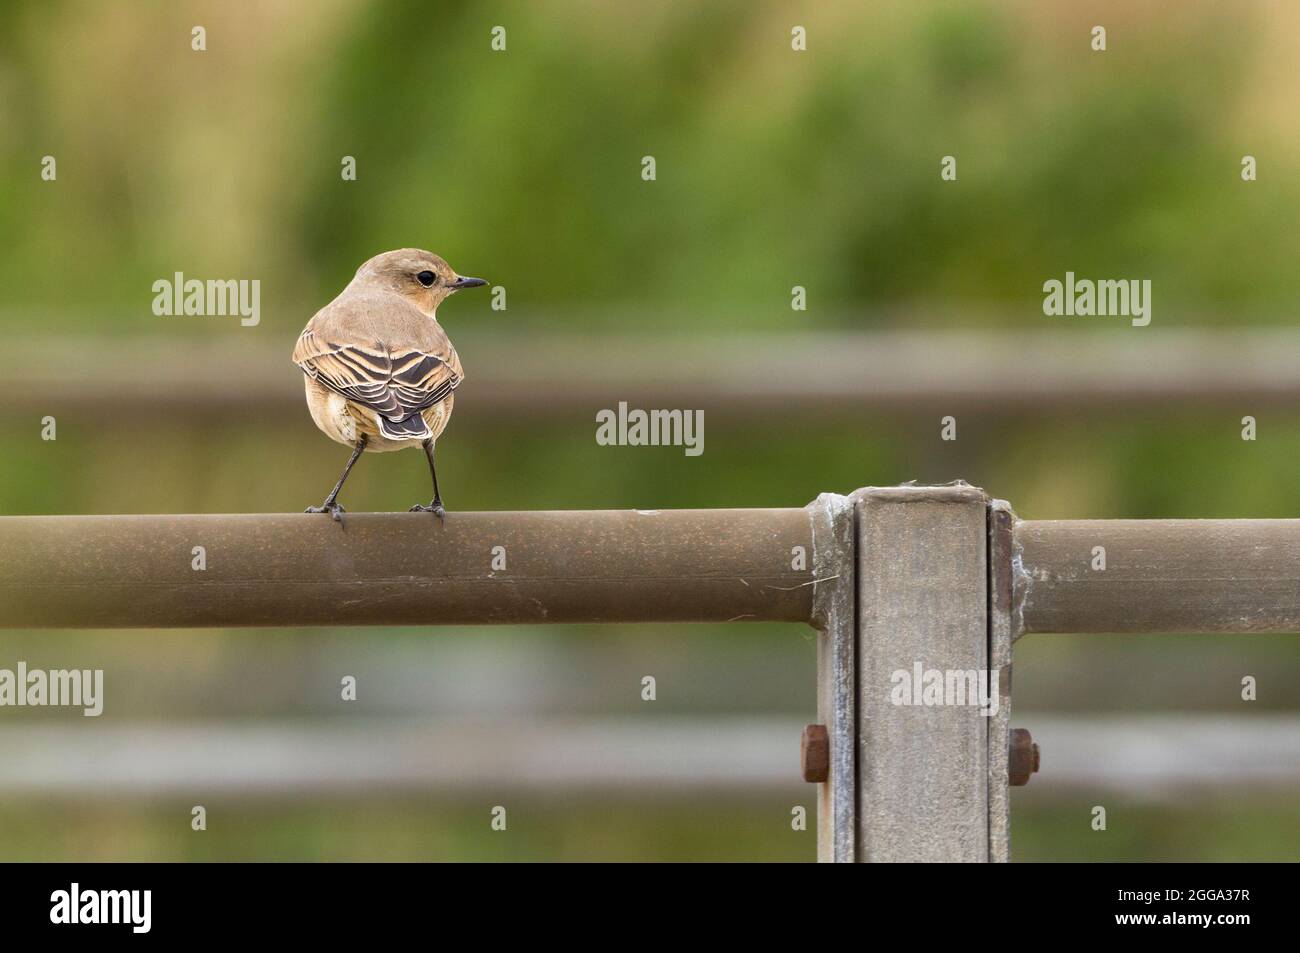 Wheatear (Oenanthe oenanthe) oiseau femelle à la fin de l'été plumage sable brun queue sombre et extrémités d'ailes rumelle blanche perchée sur un rail, à la recherche de nourriture Banque D'Images